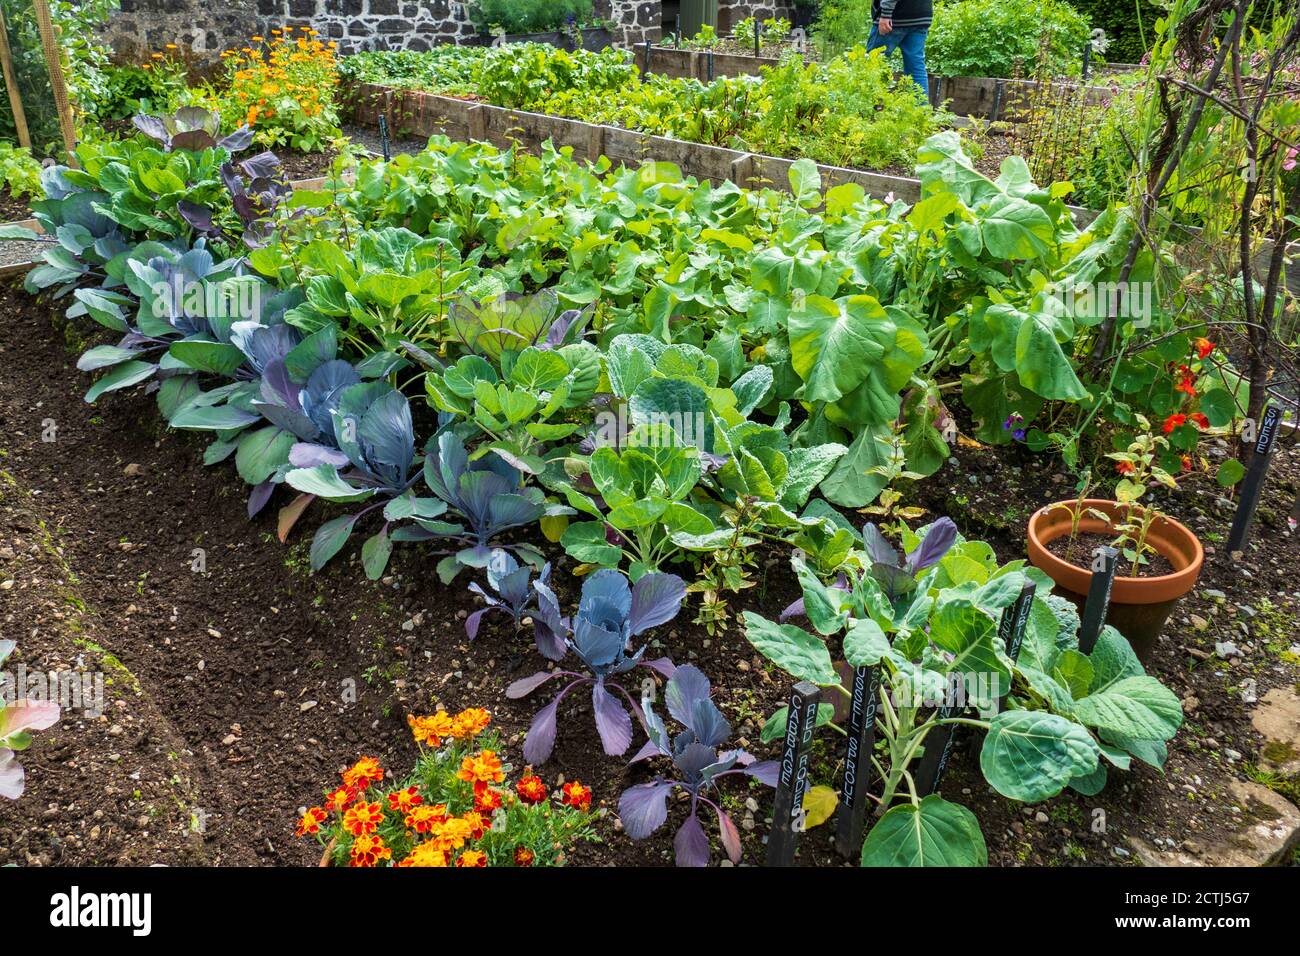 Bauern Garten, mit Rote Bete, Rettich und Rüben Anbau Foto Stock